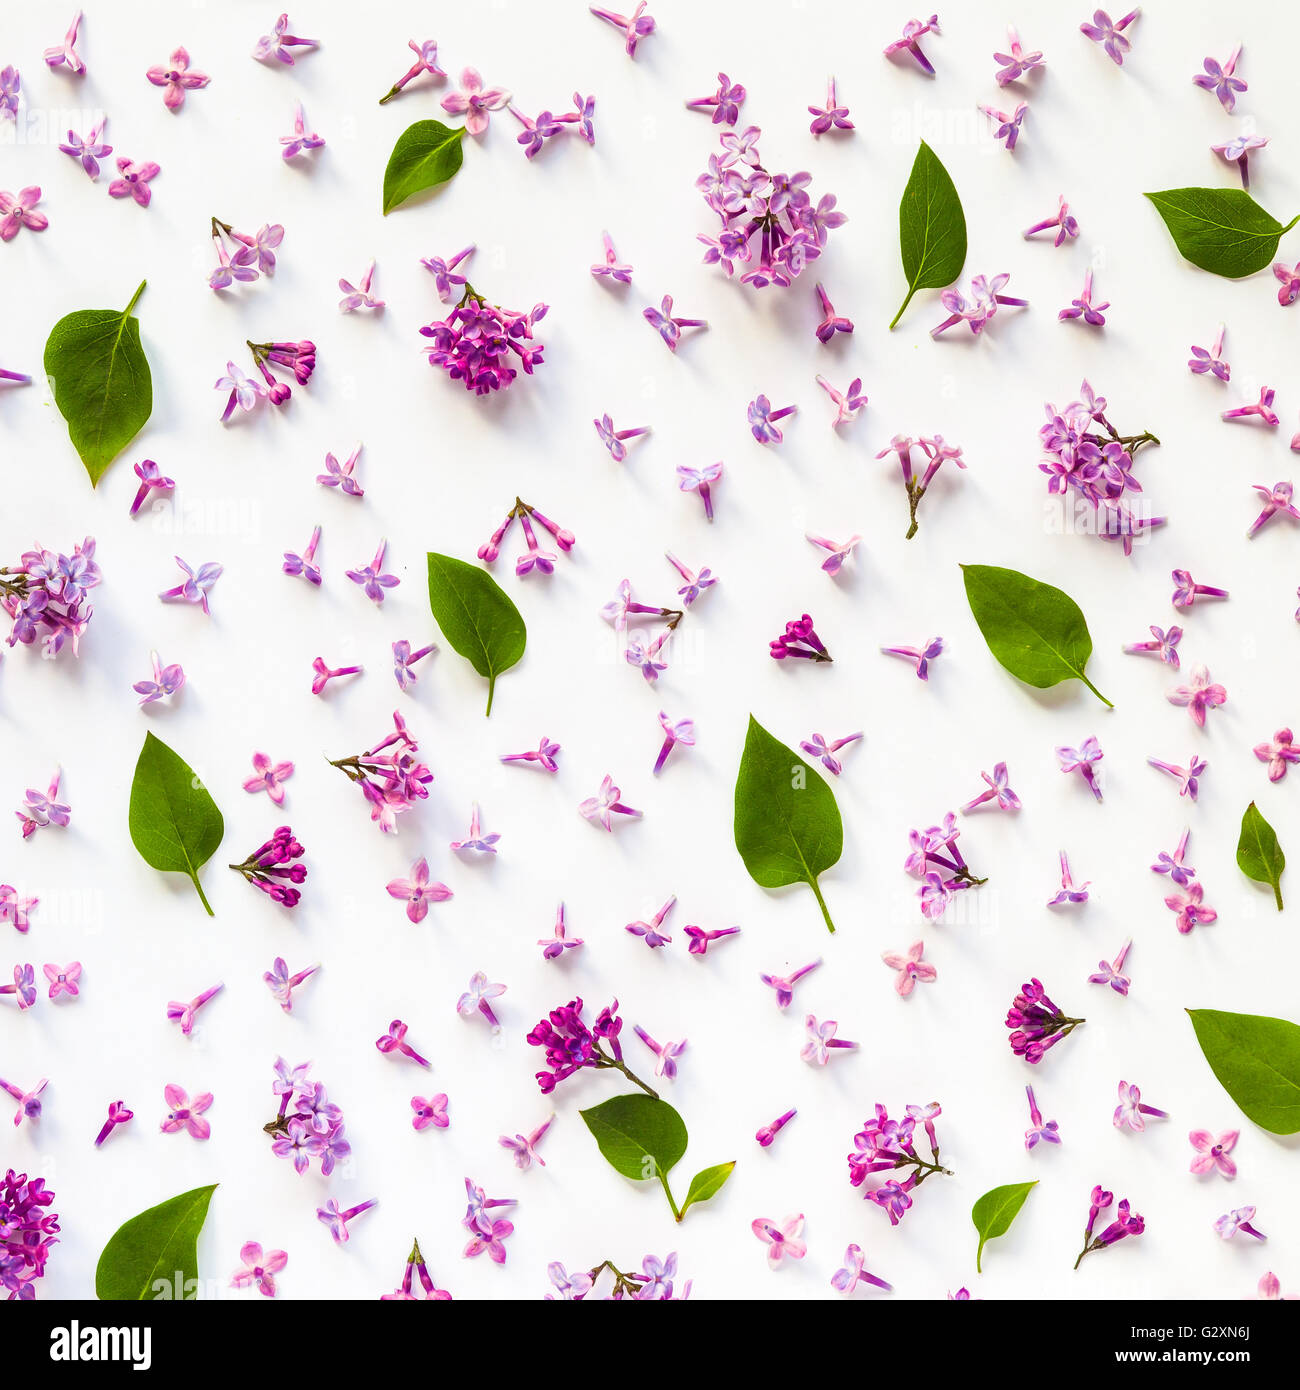 Florales Muster von frischem lila Blüten und Blätter auf Weiß. Flach, Ansicht von oben. Stockfoto